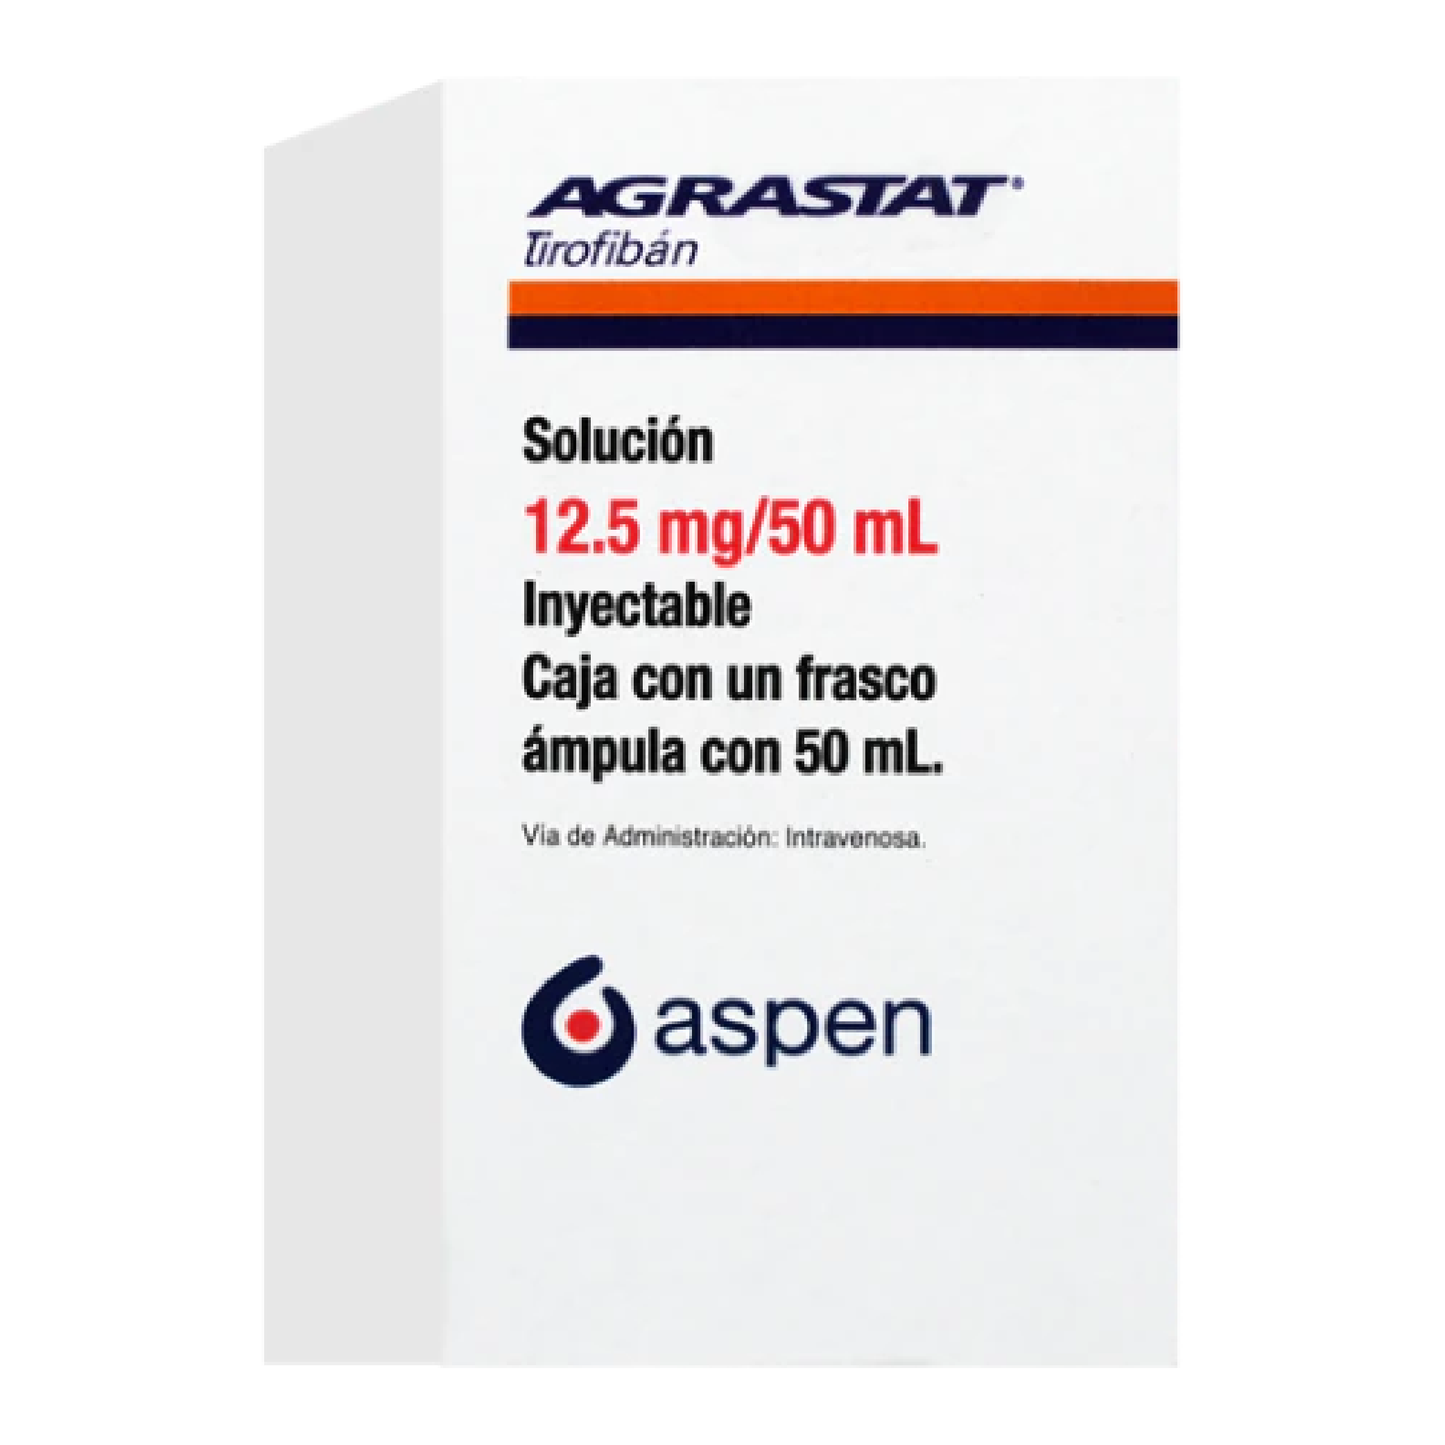 Agrastat 12.5 mg / 50 mL